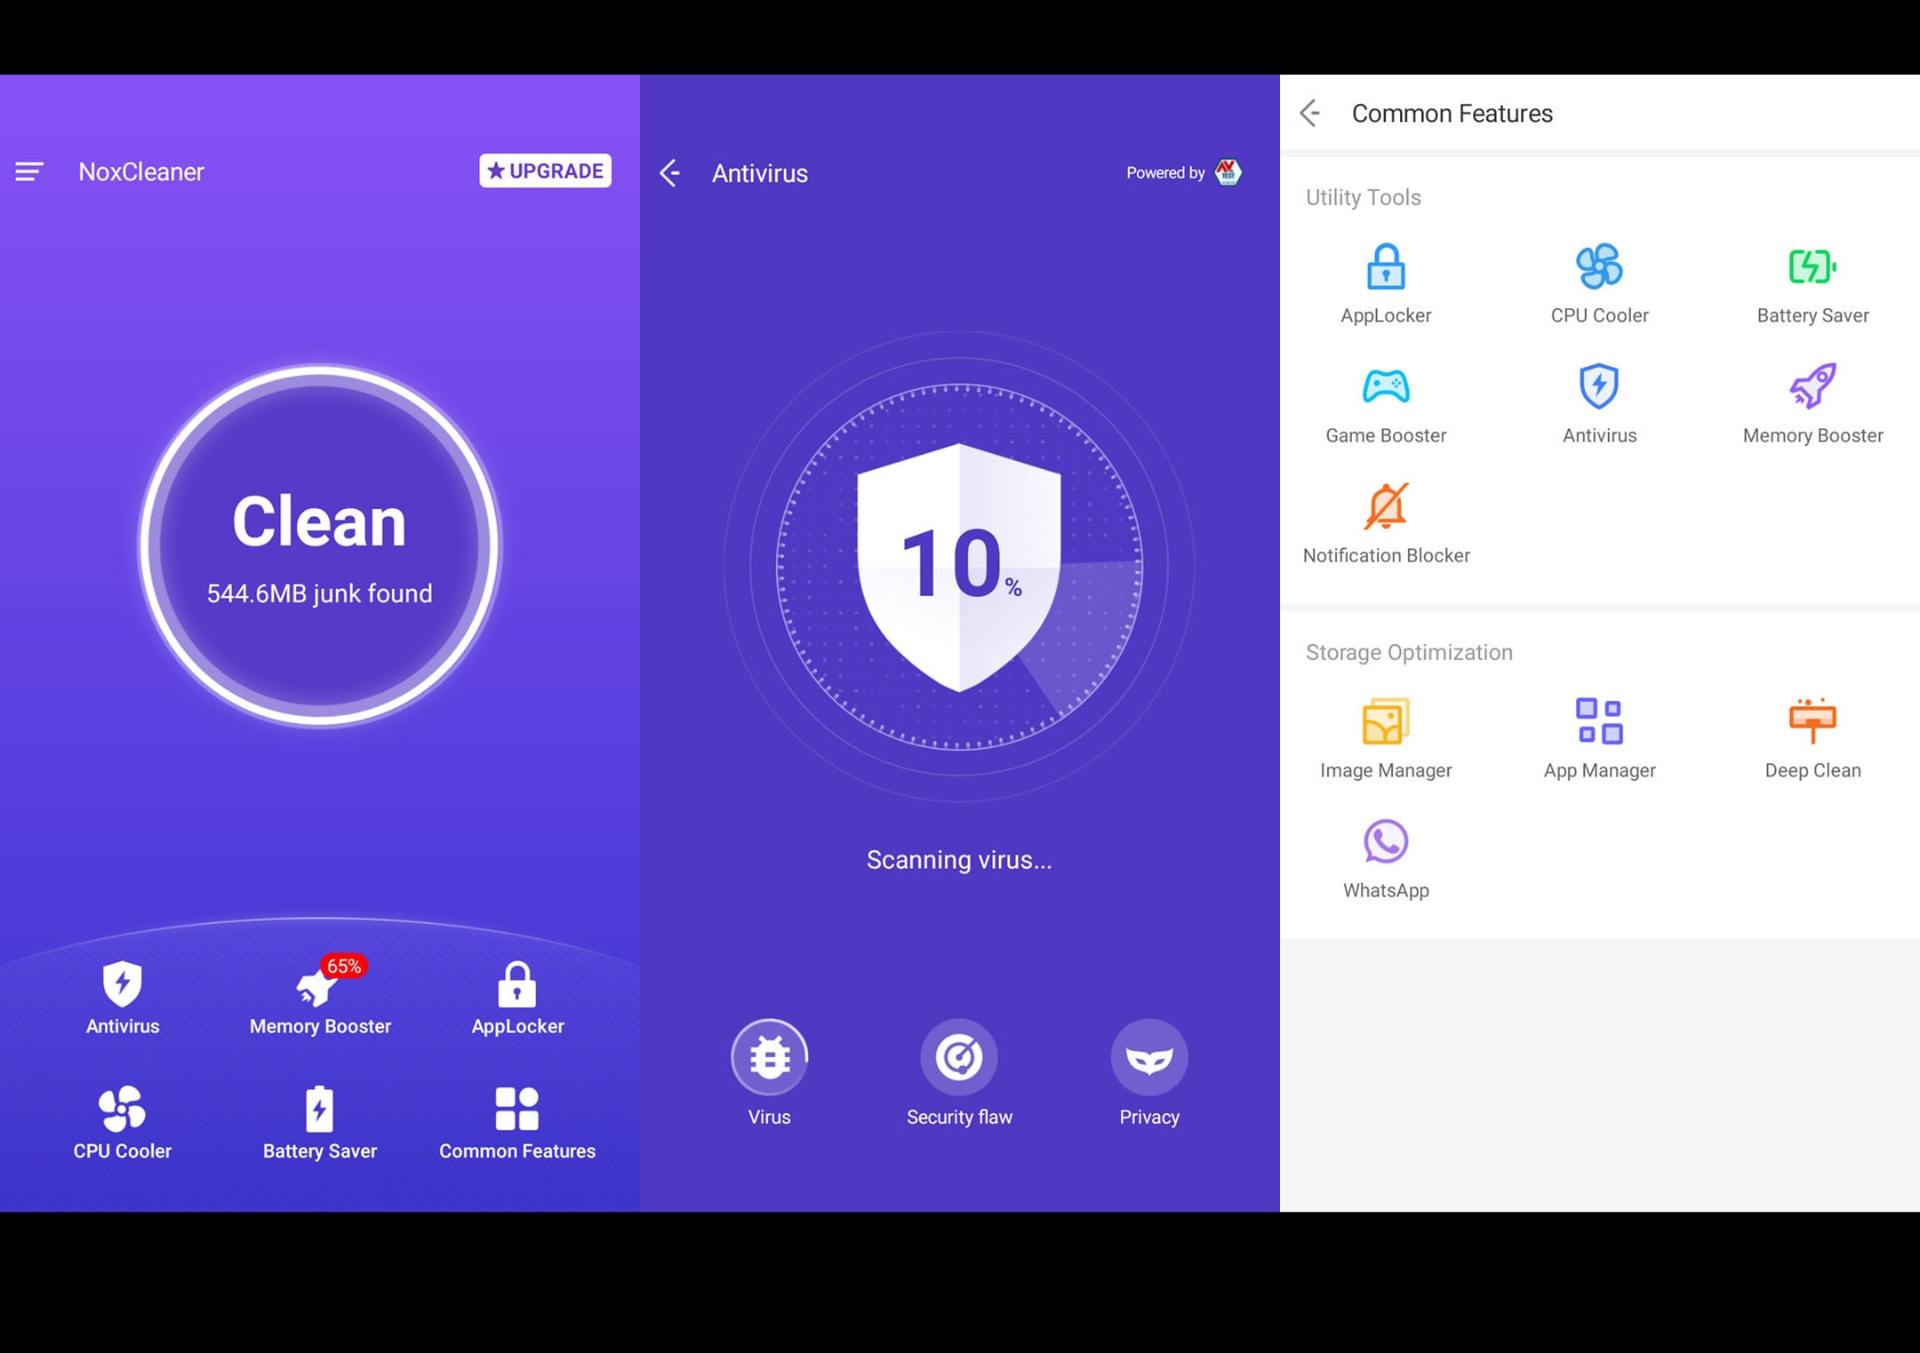 Nox Cleaner App - Gain More Storage Space